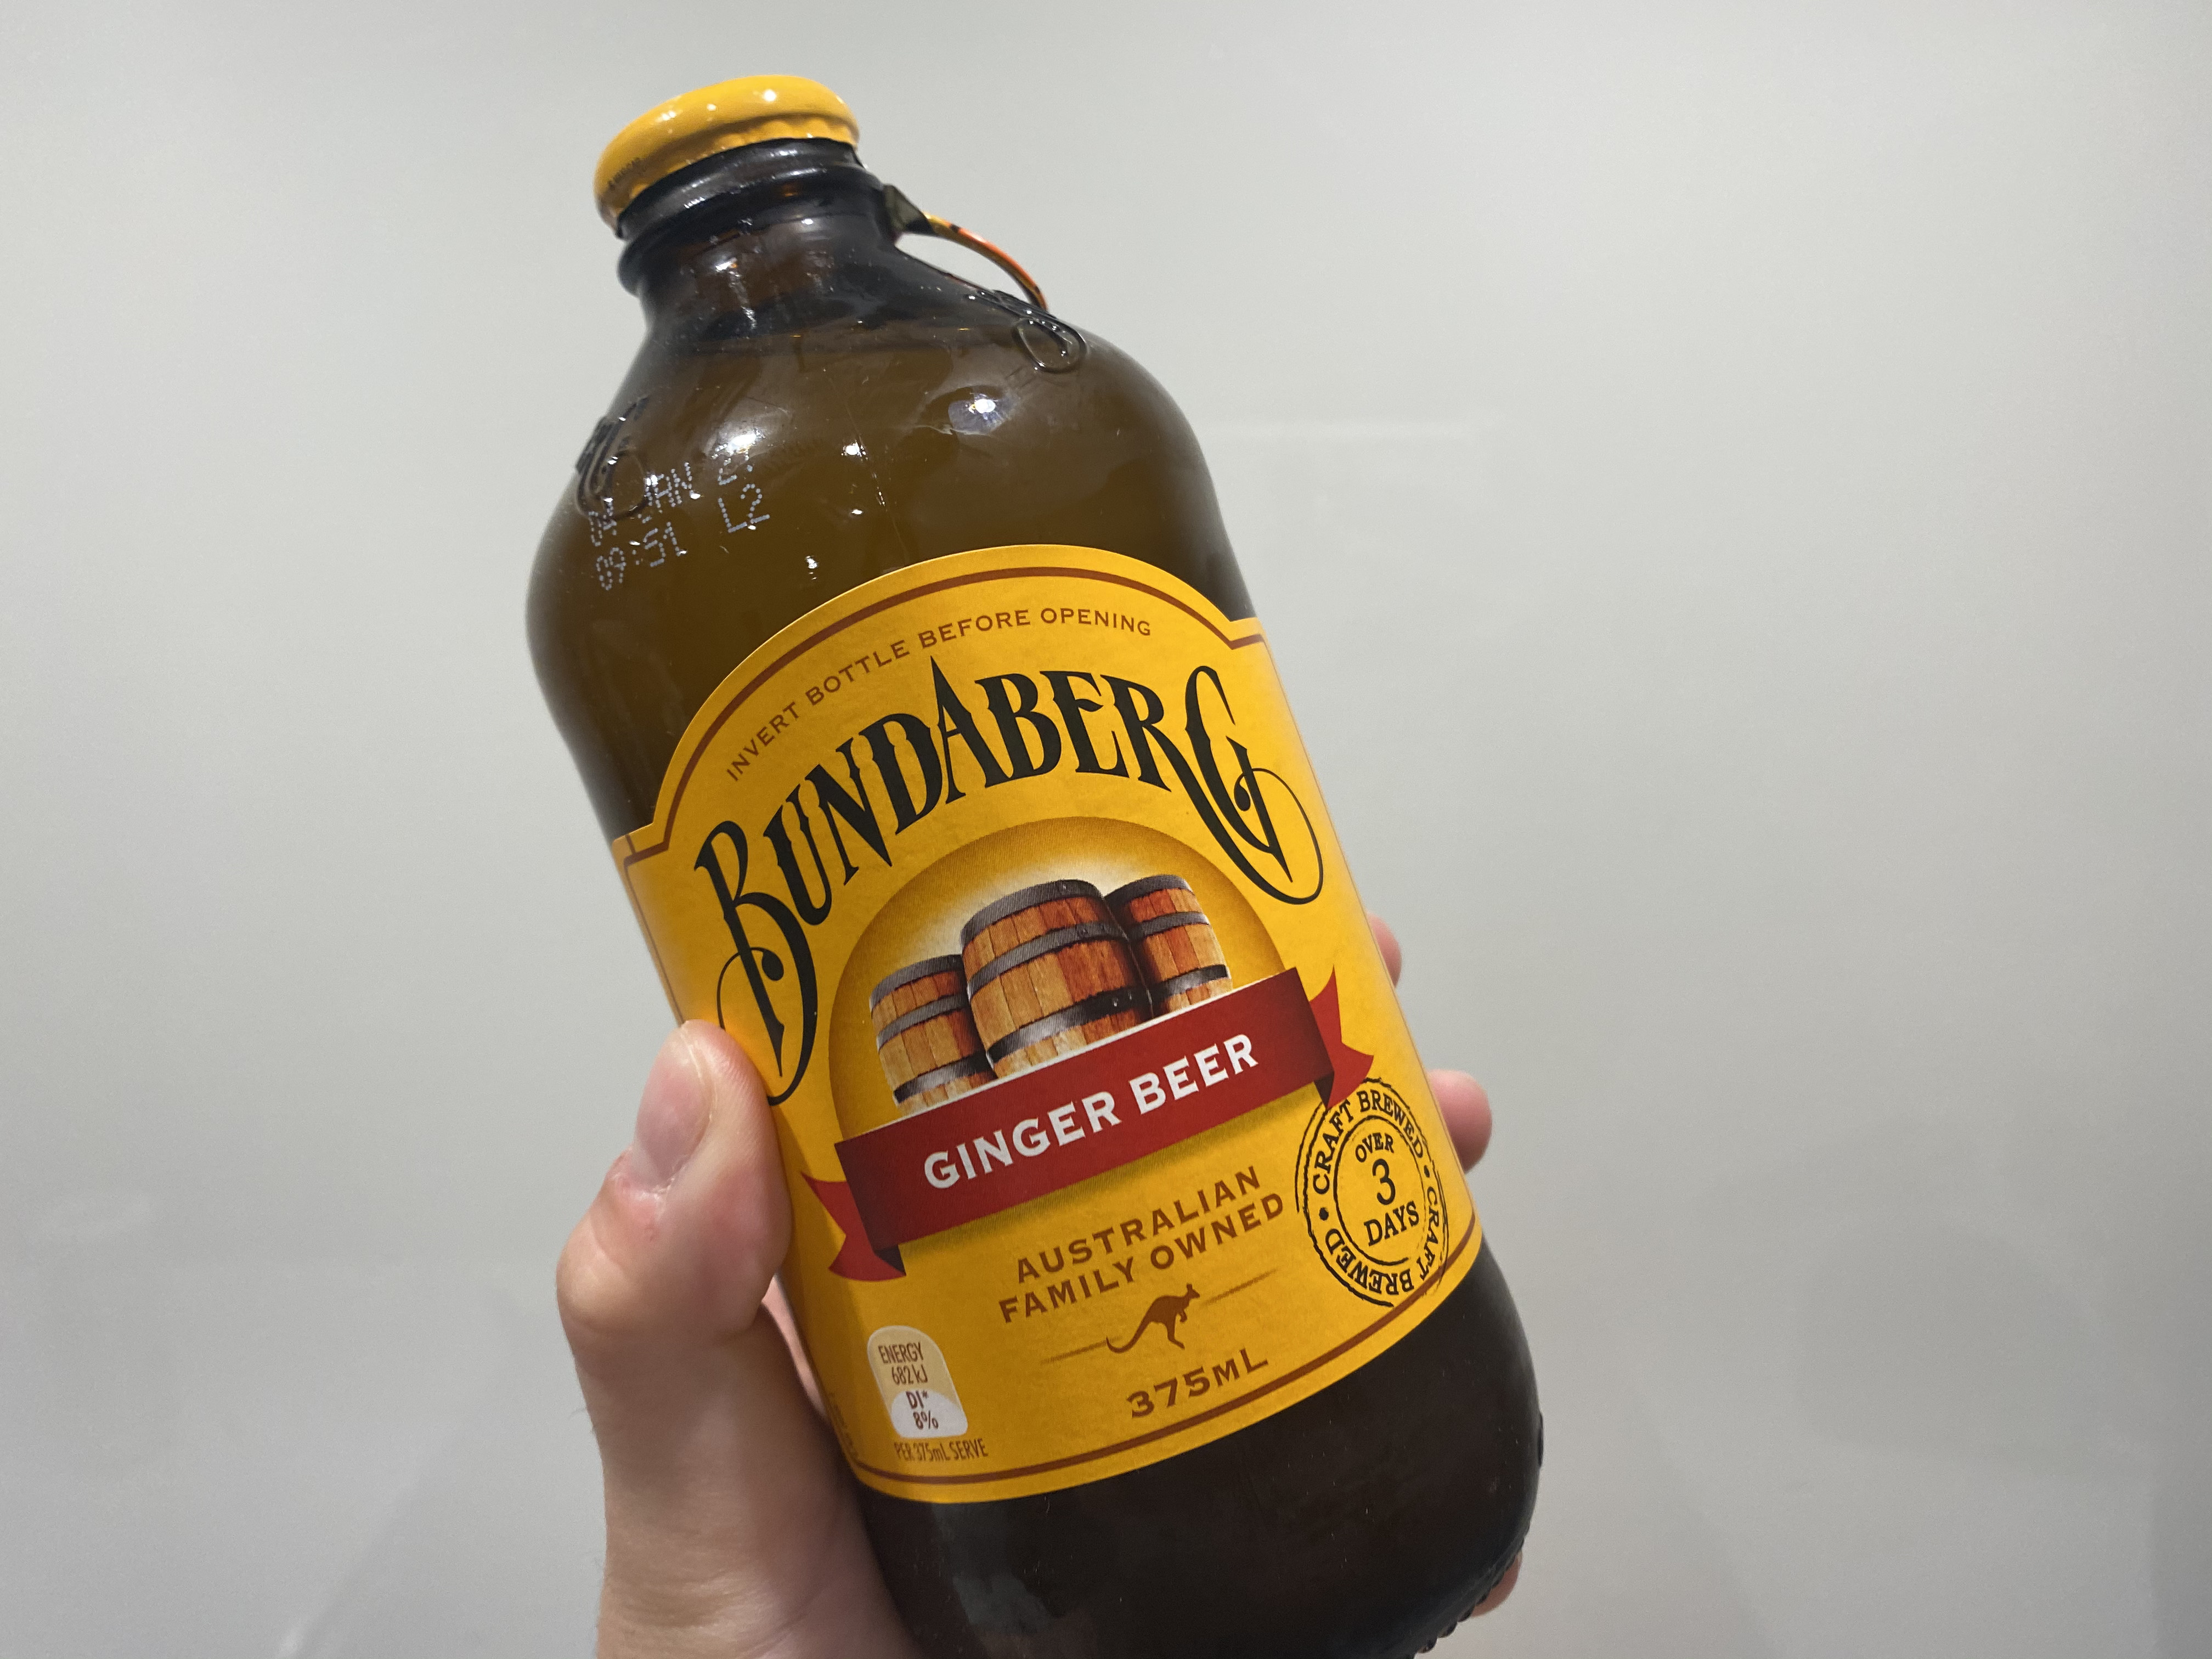 Jtb オーストラリア 公式 ジンジャービア オーストラリアで地元の人に愛される飲み物 ジンジャービア ジンジャーエールより甘みが少なく 生姜の風味が強いのが特徴です ビアと呼ばれていますがノンアルコールですので お子様にもおすすめ